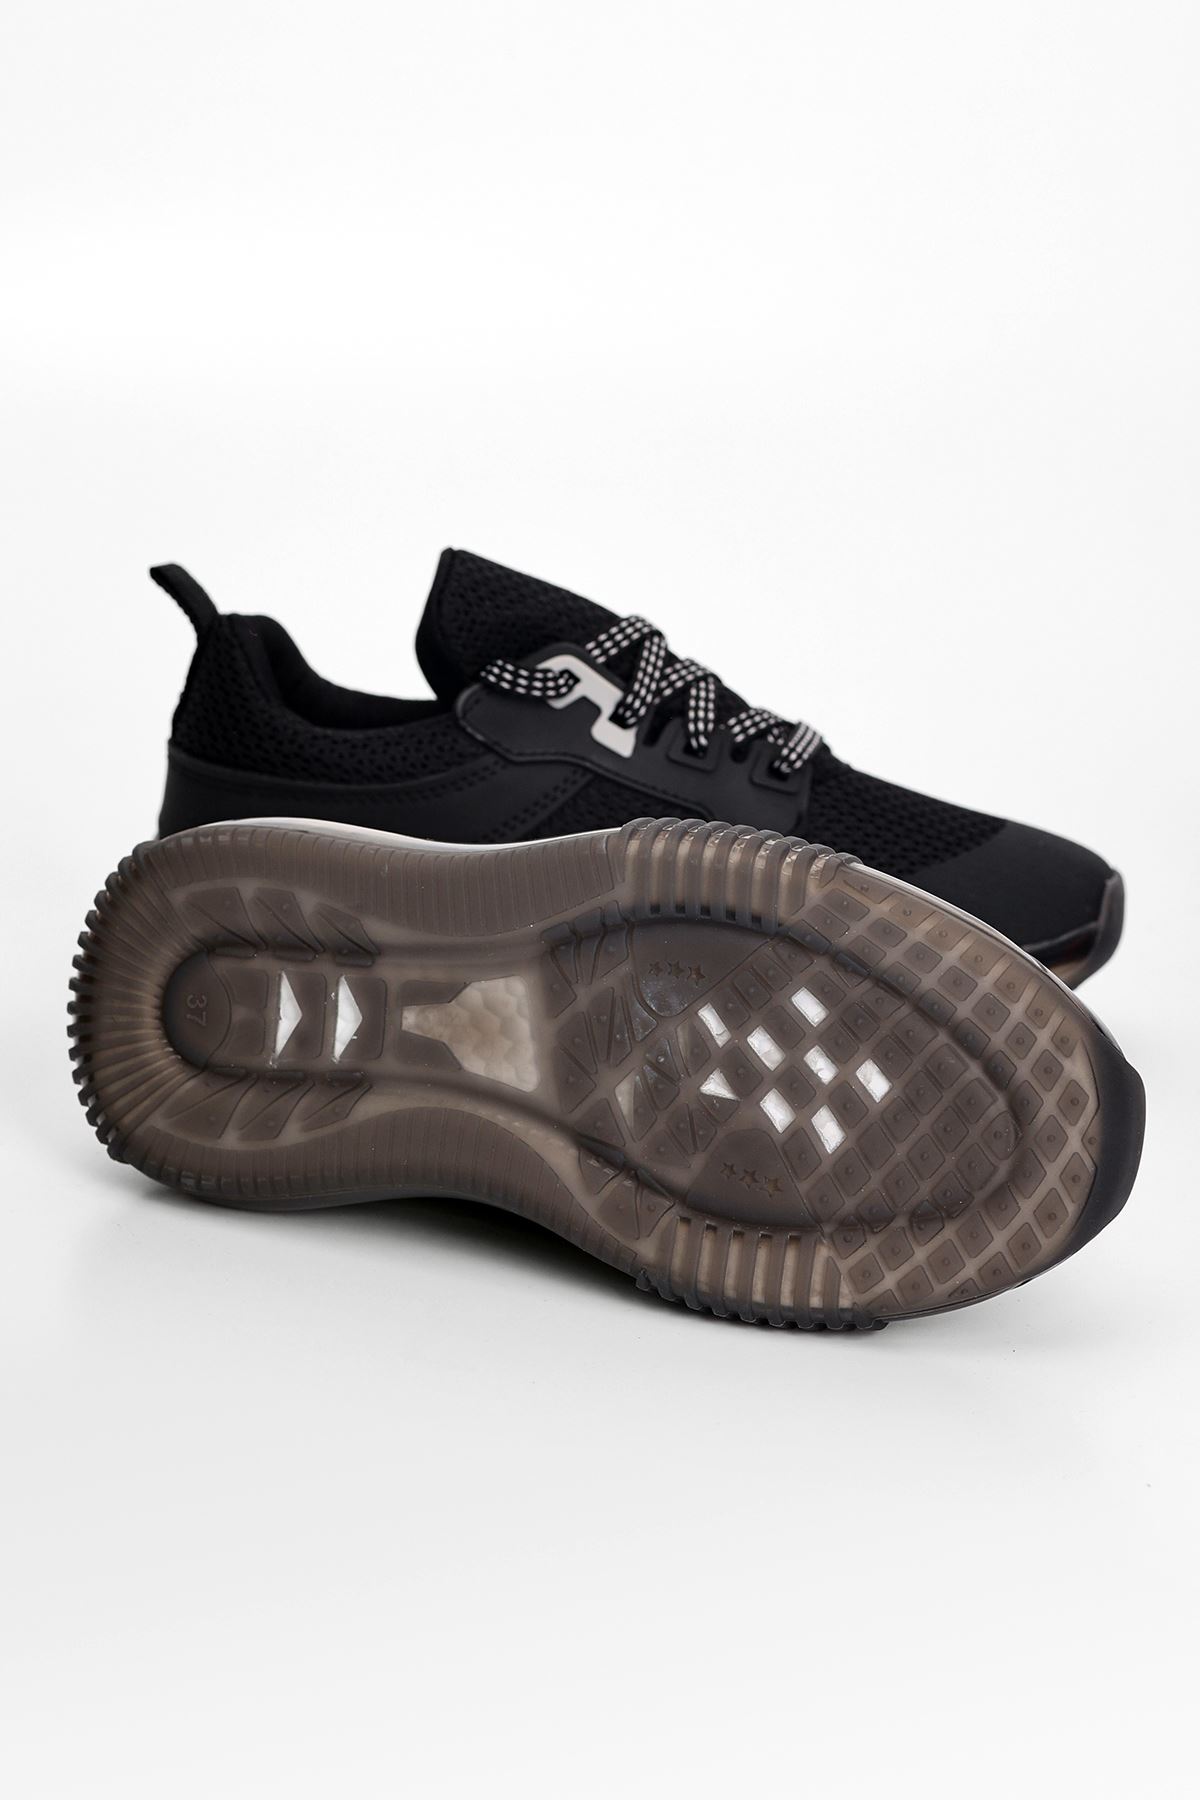 Doga Hava Taban Detaylı Kadın Spor Ayakkabı Siyah